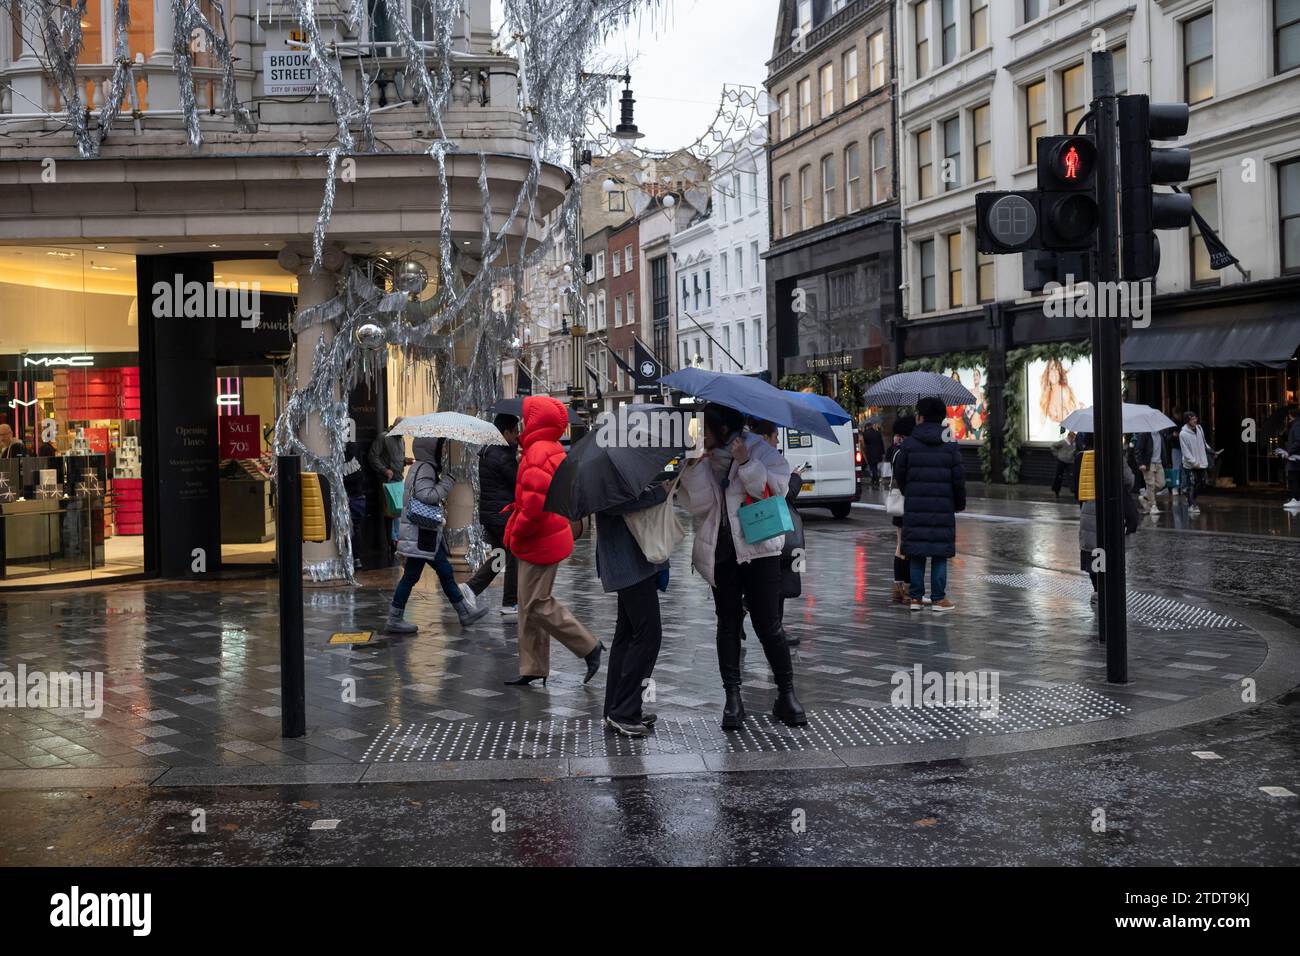 Weihnachtseinkäufer entlang der Old Bond Street an einem nassen Wintertag, London, England, Großbritannien Stockfoto